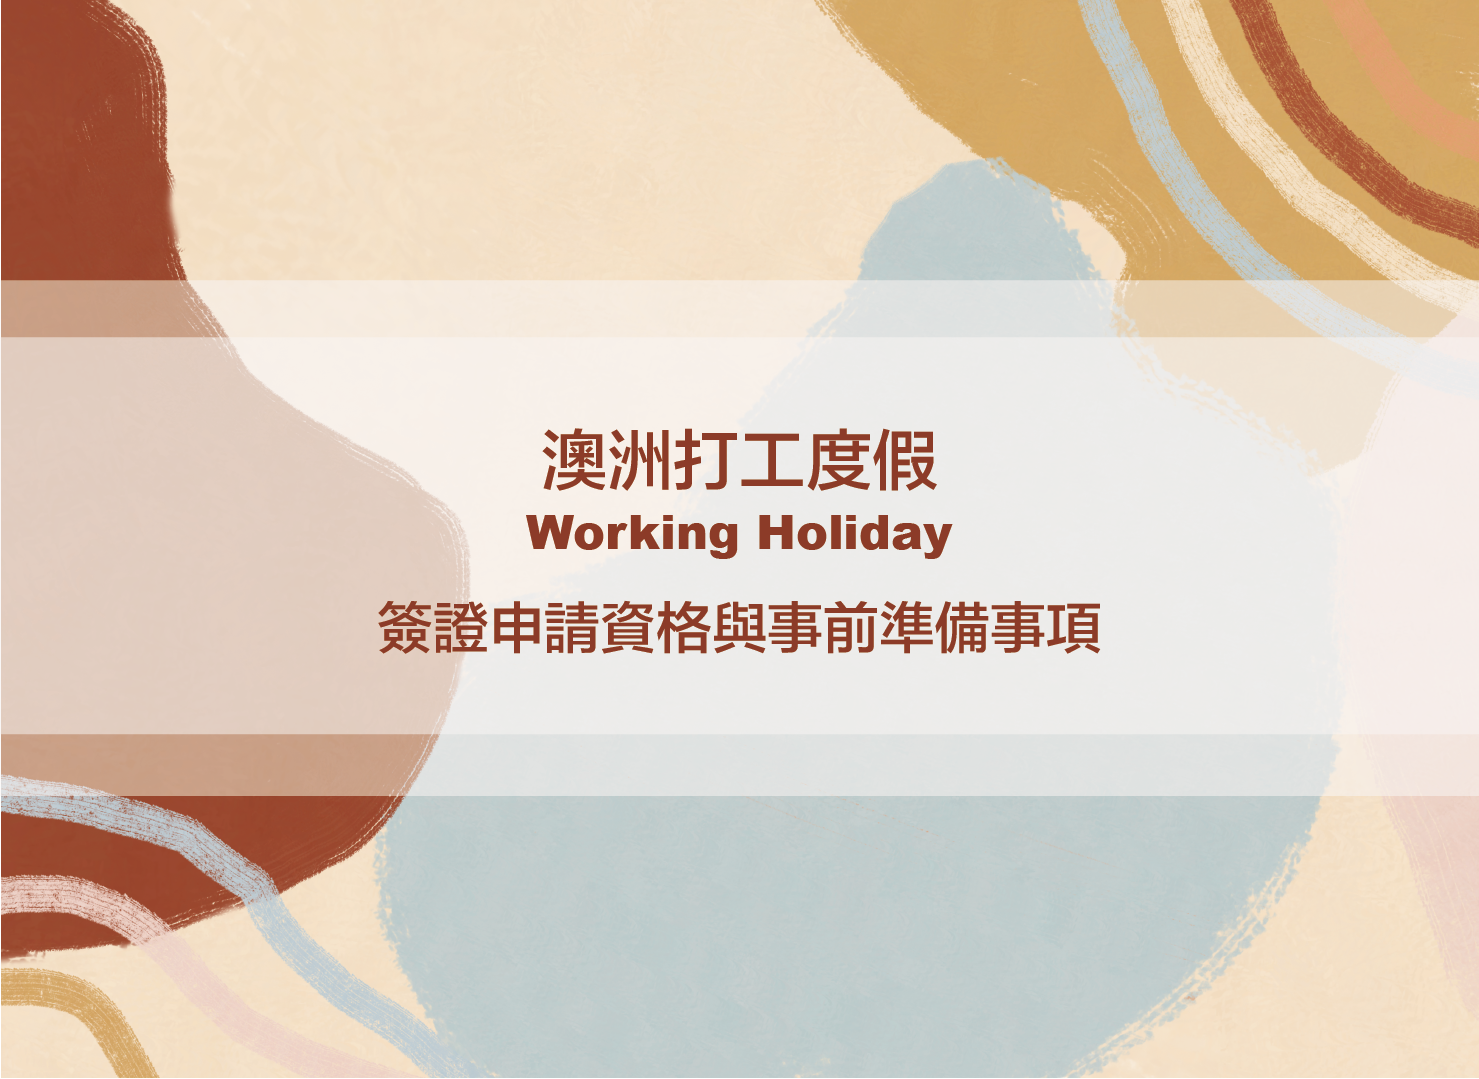 澳洲打工度假｜Working Holiday 417 簽證申請資格與事前準備事項（2021最新版）